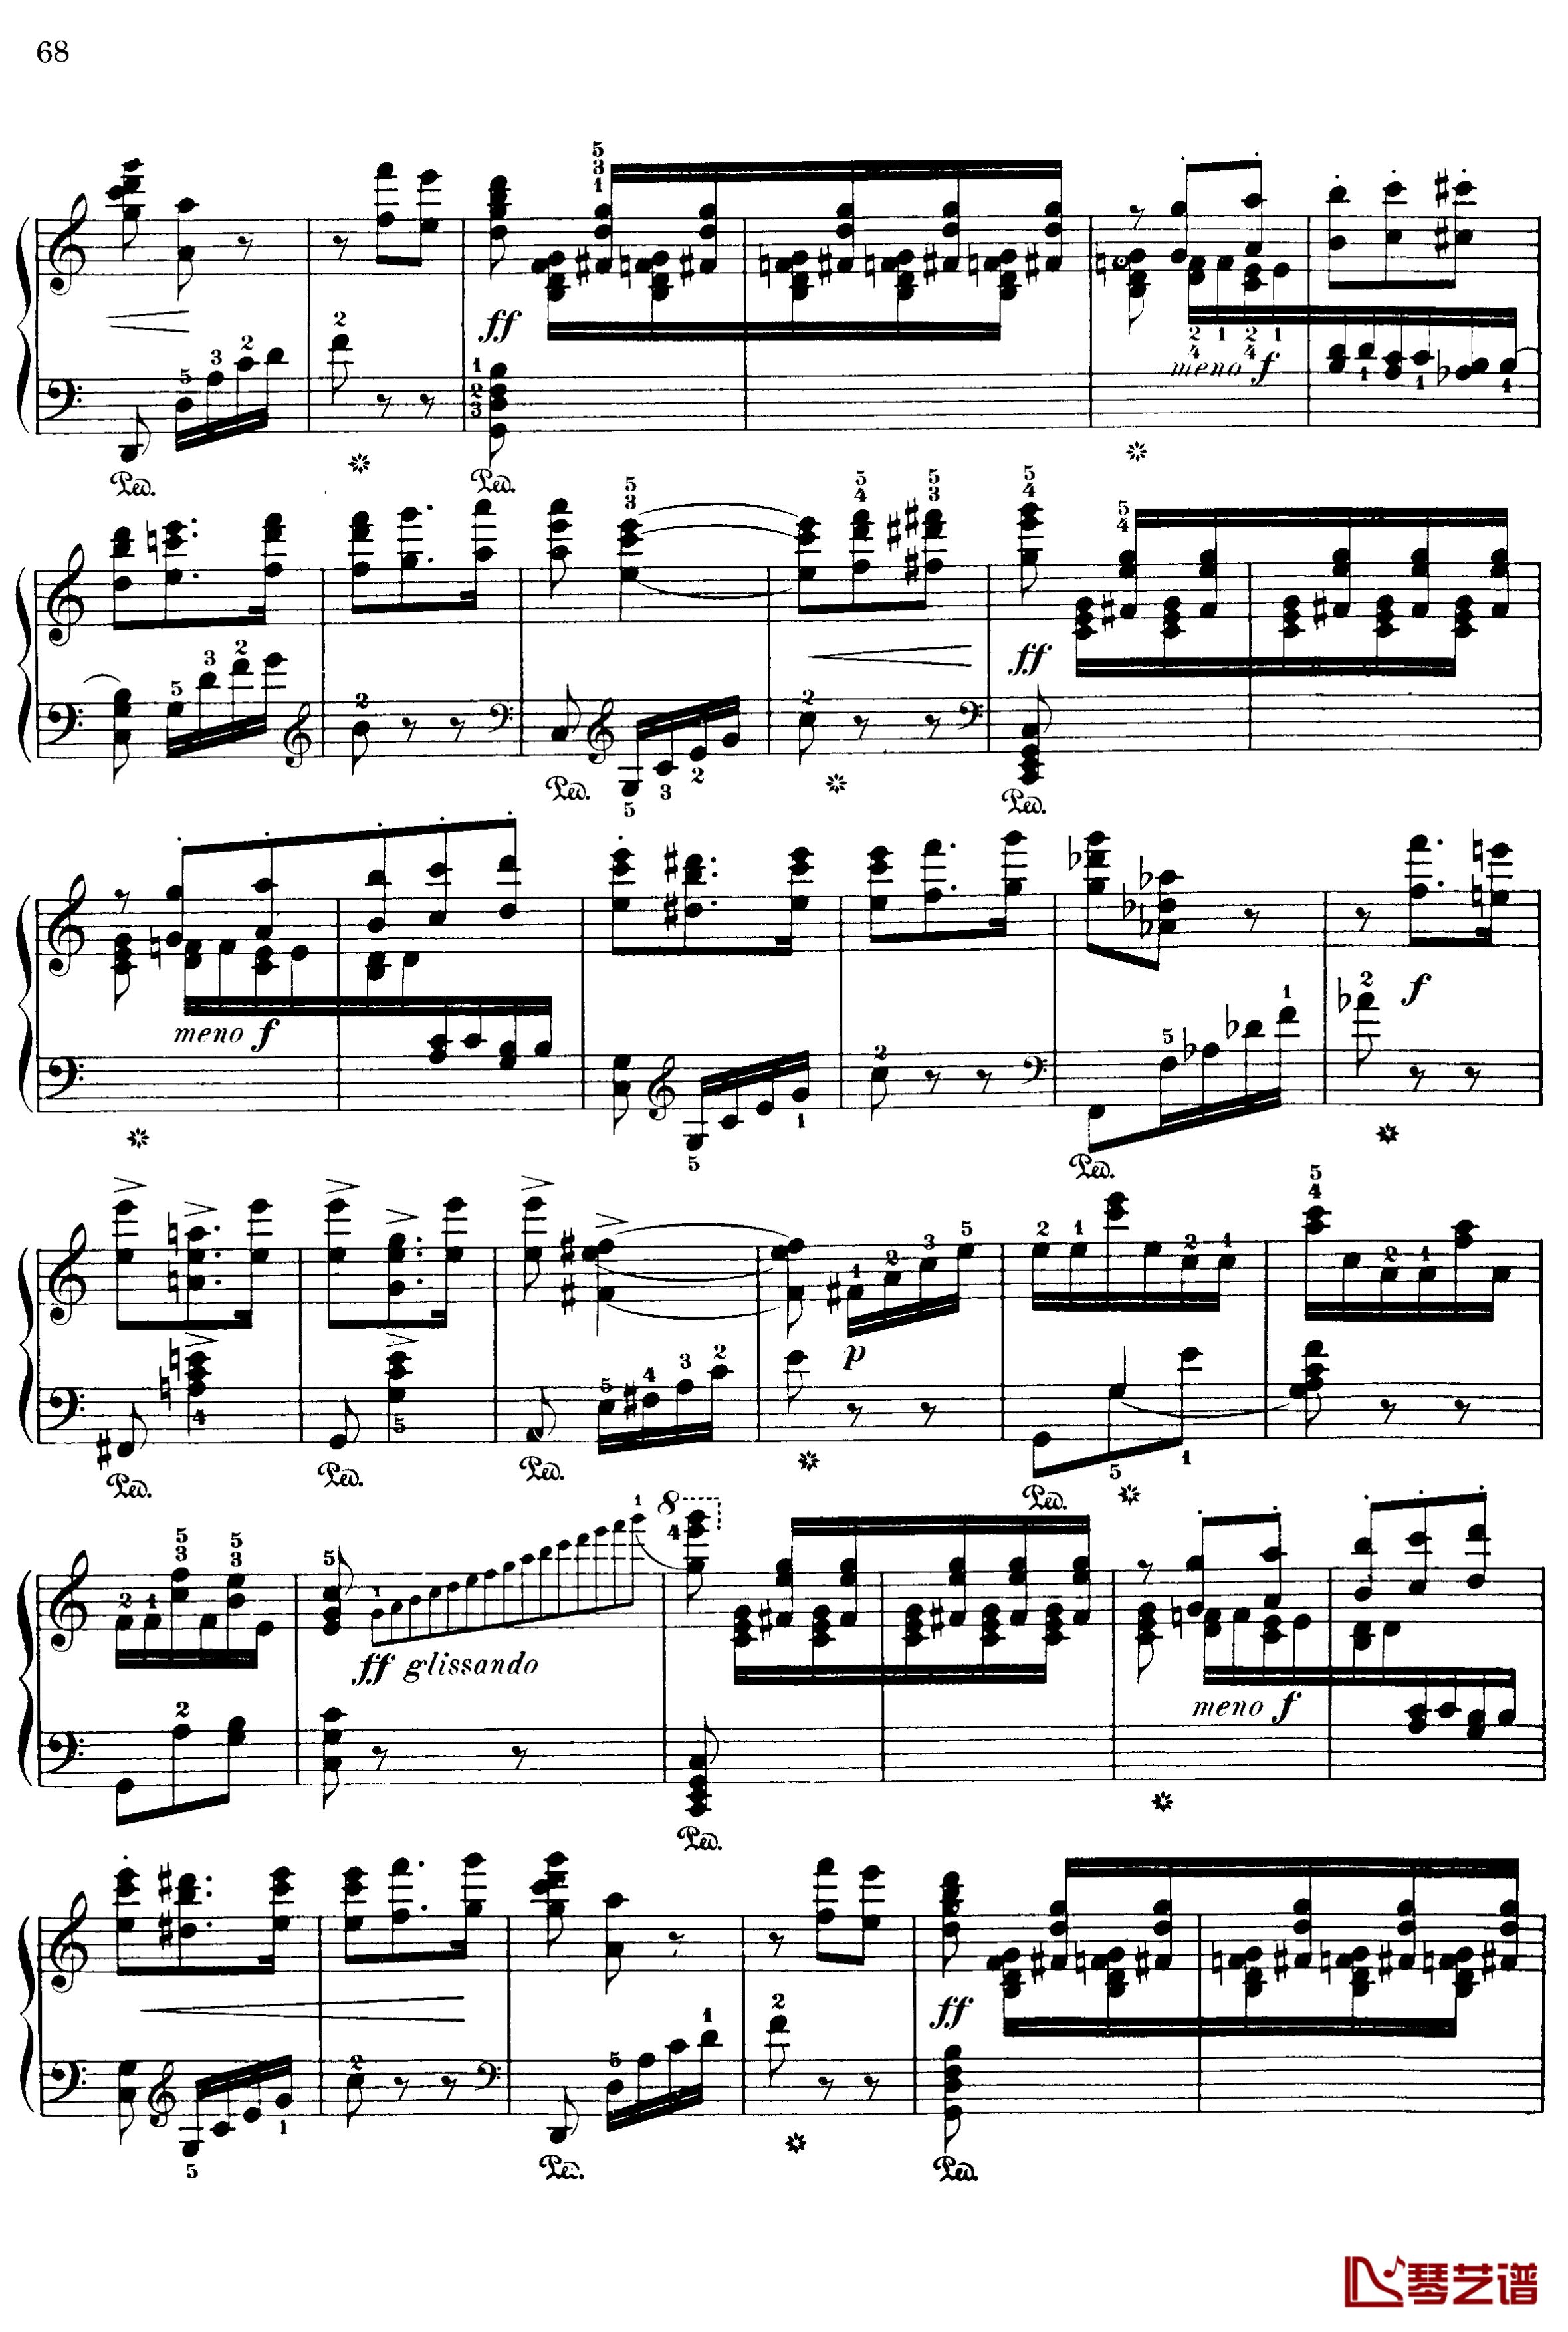 西班牙随想曲 Op.37钢琴谱-莫什科夫斯基-Moszkowski